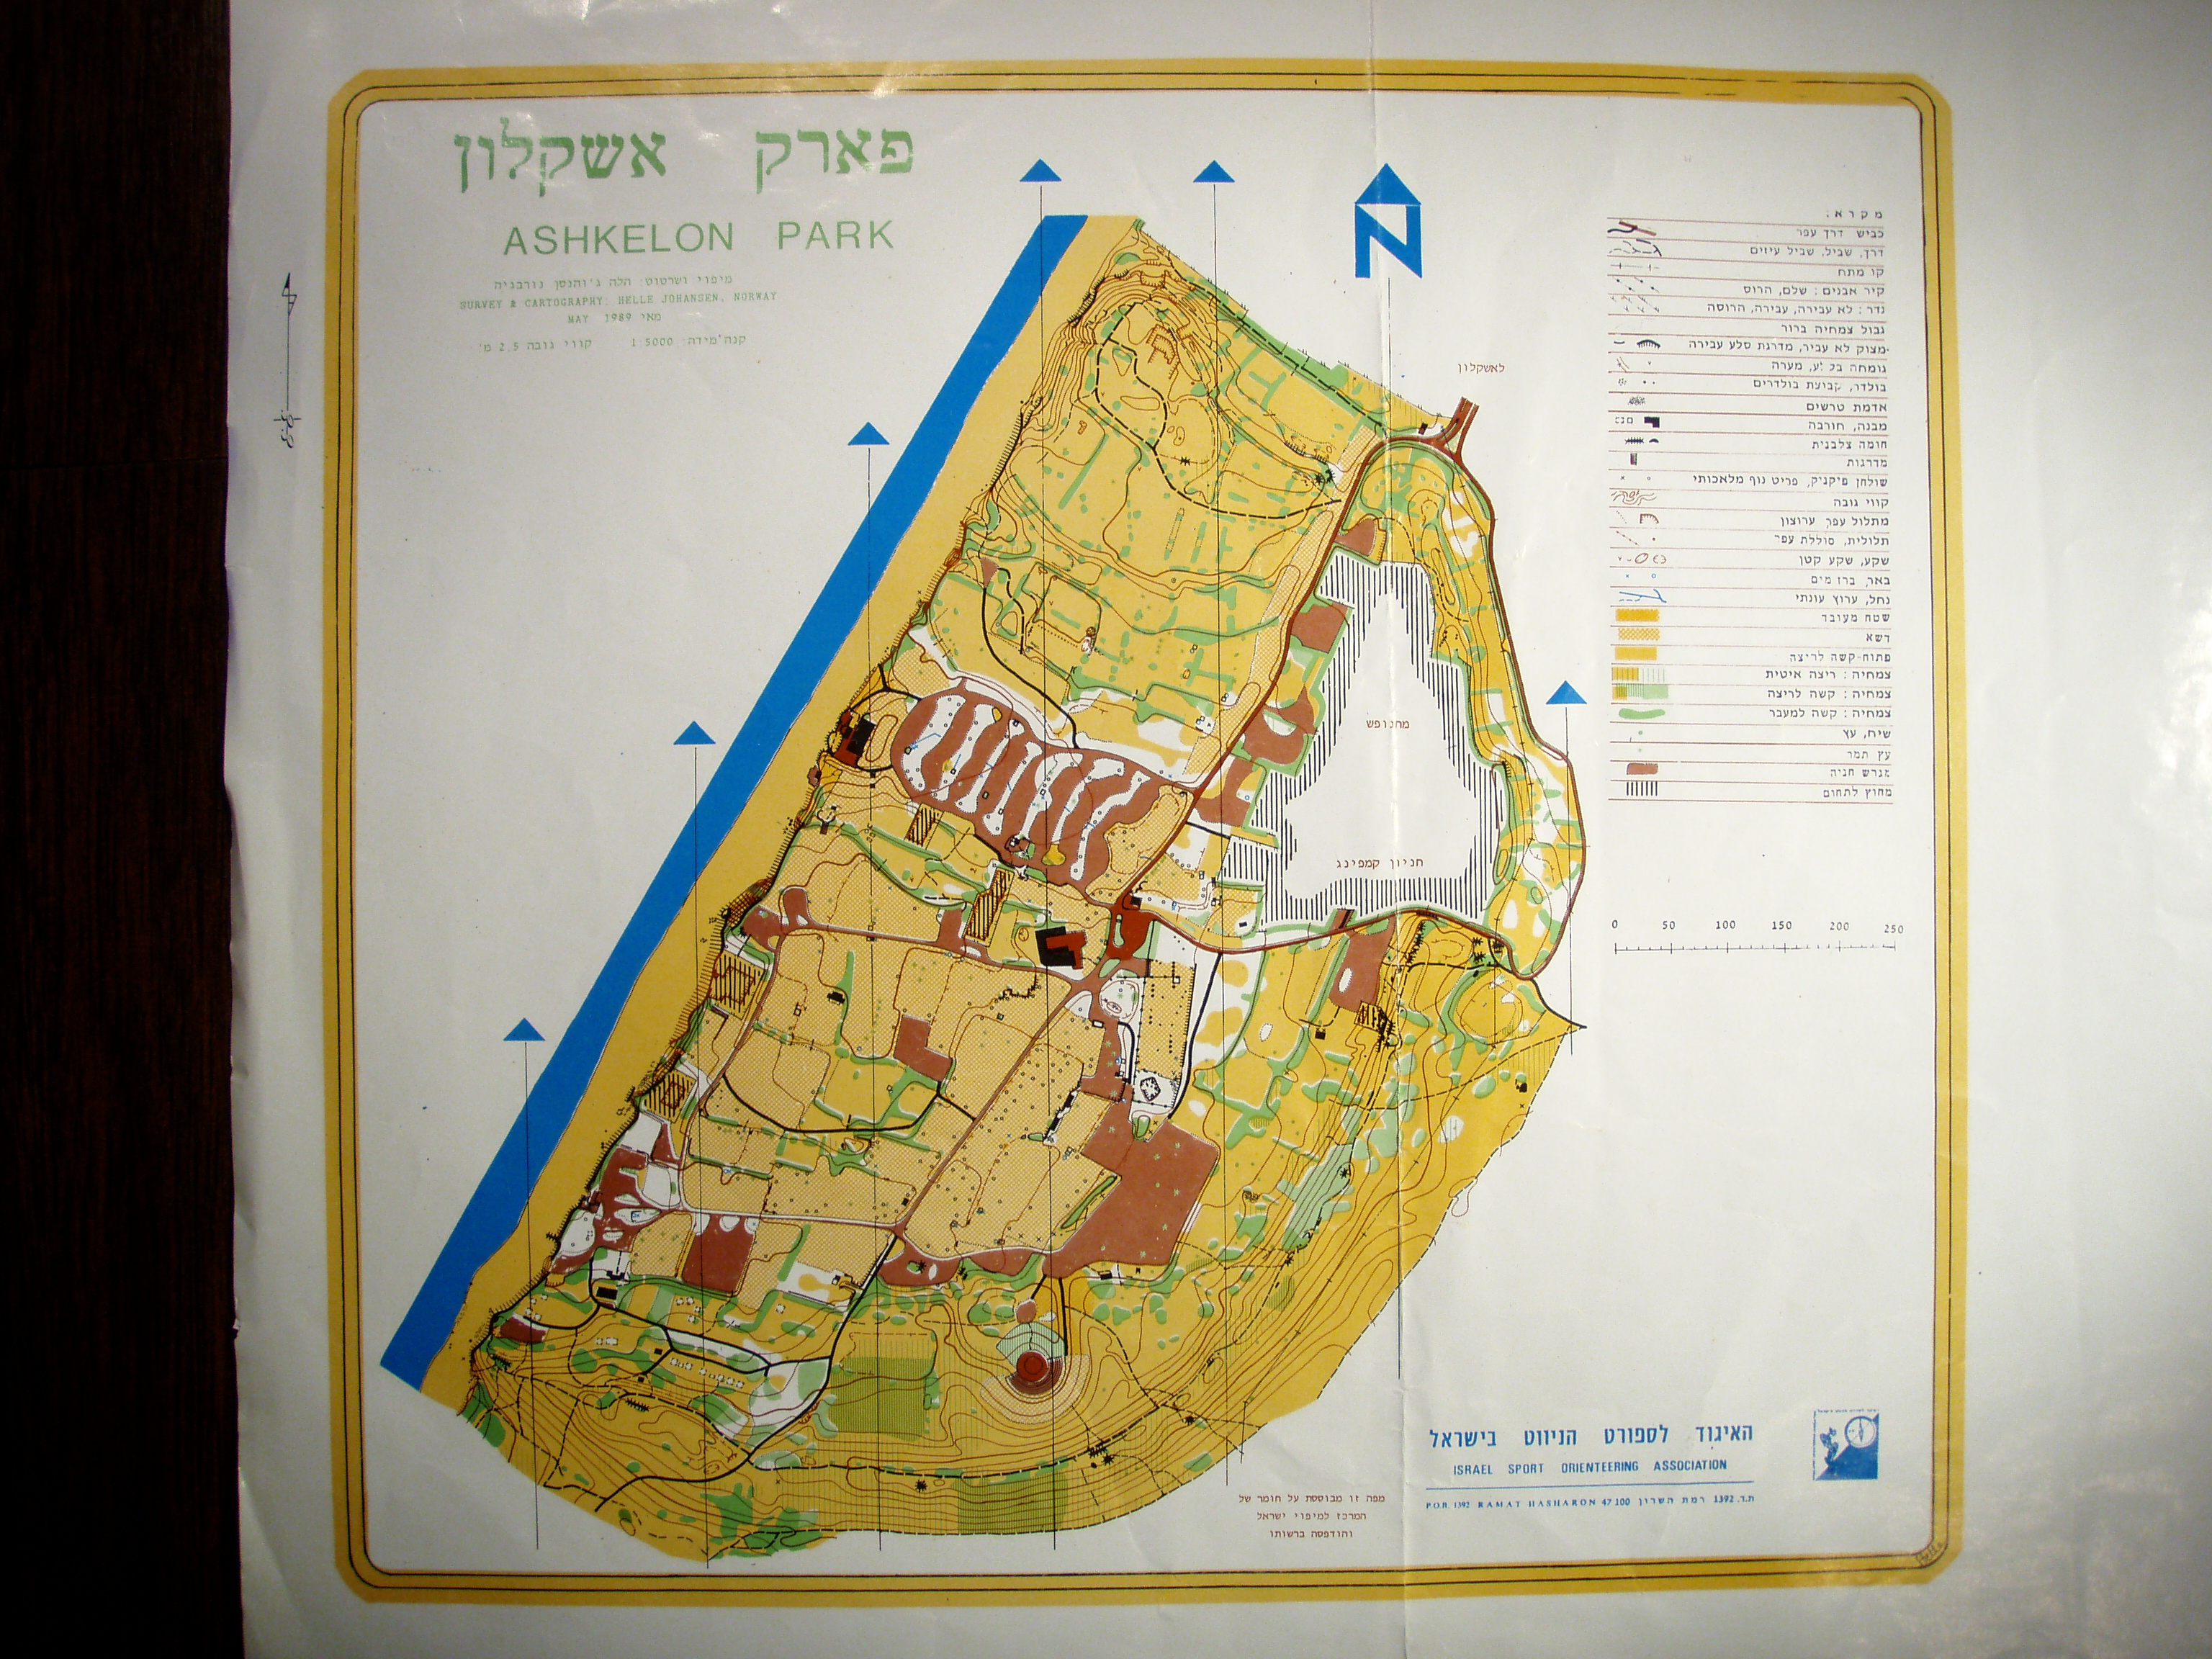 Ashkelon park (20-05-1989)